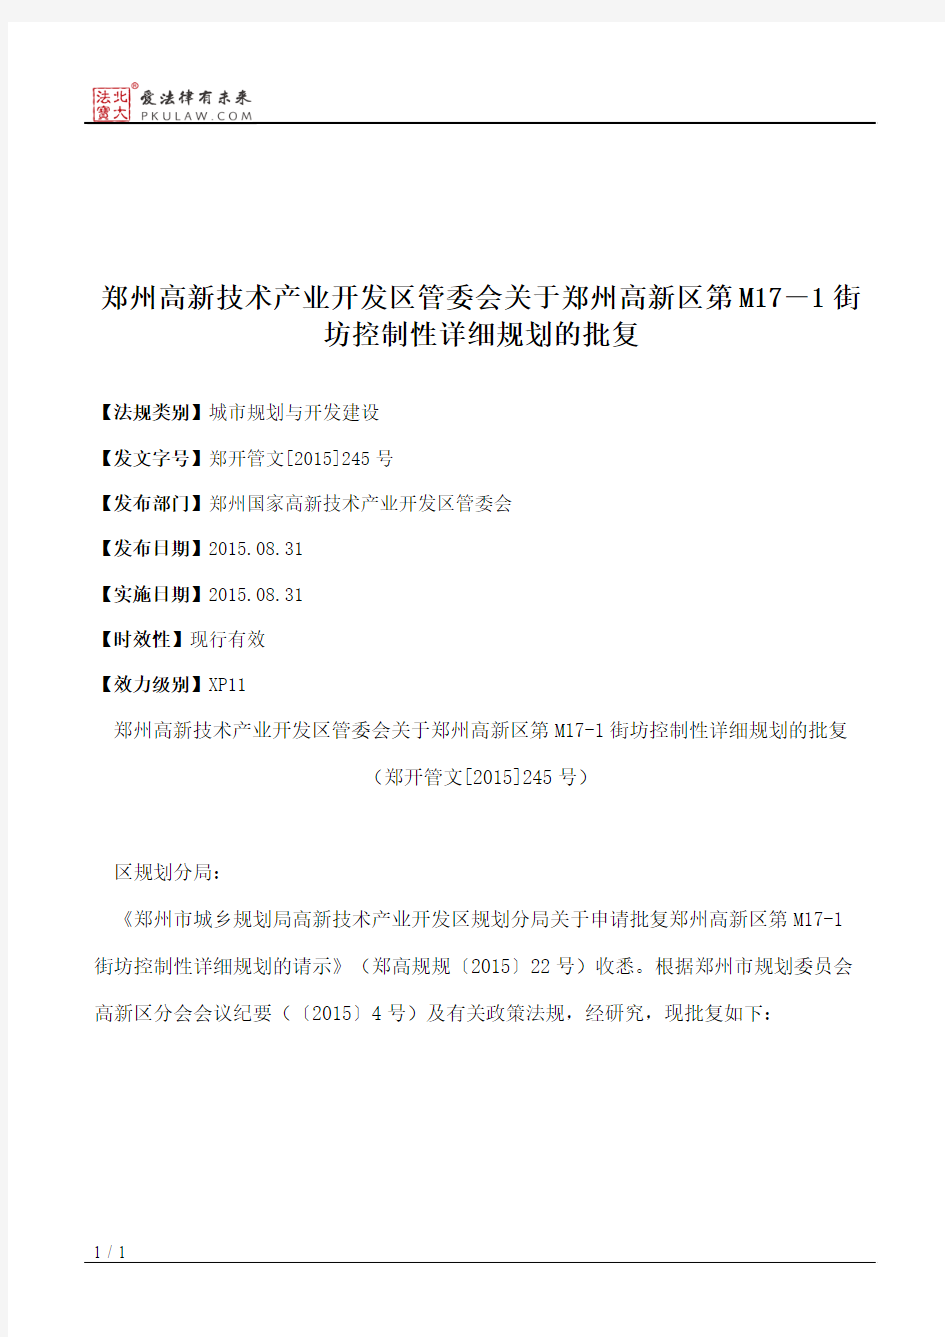 郑州高新技术产业开发区管委会关于郑州高新区第M17―1街坊控制性